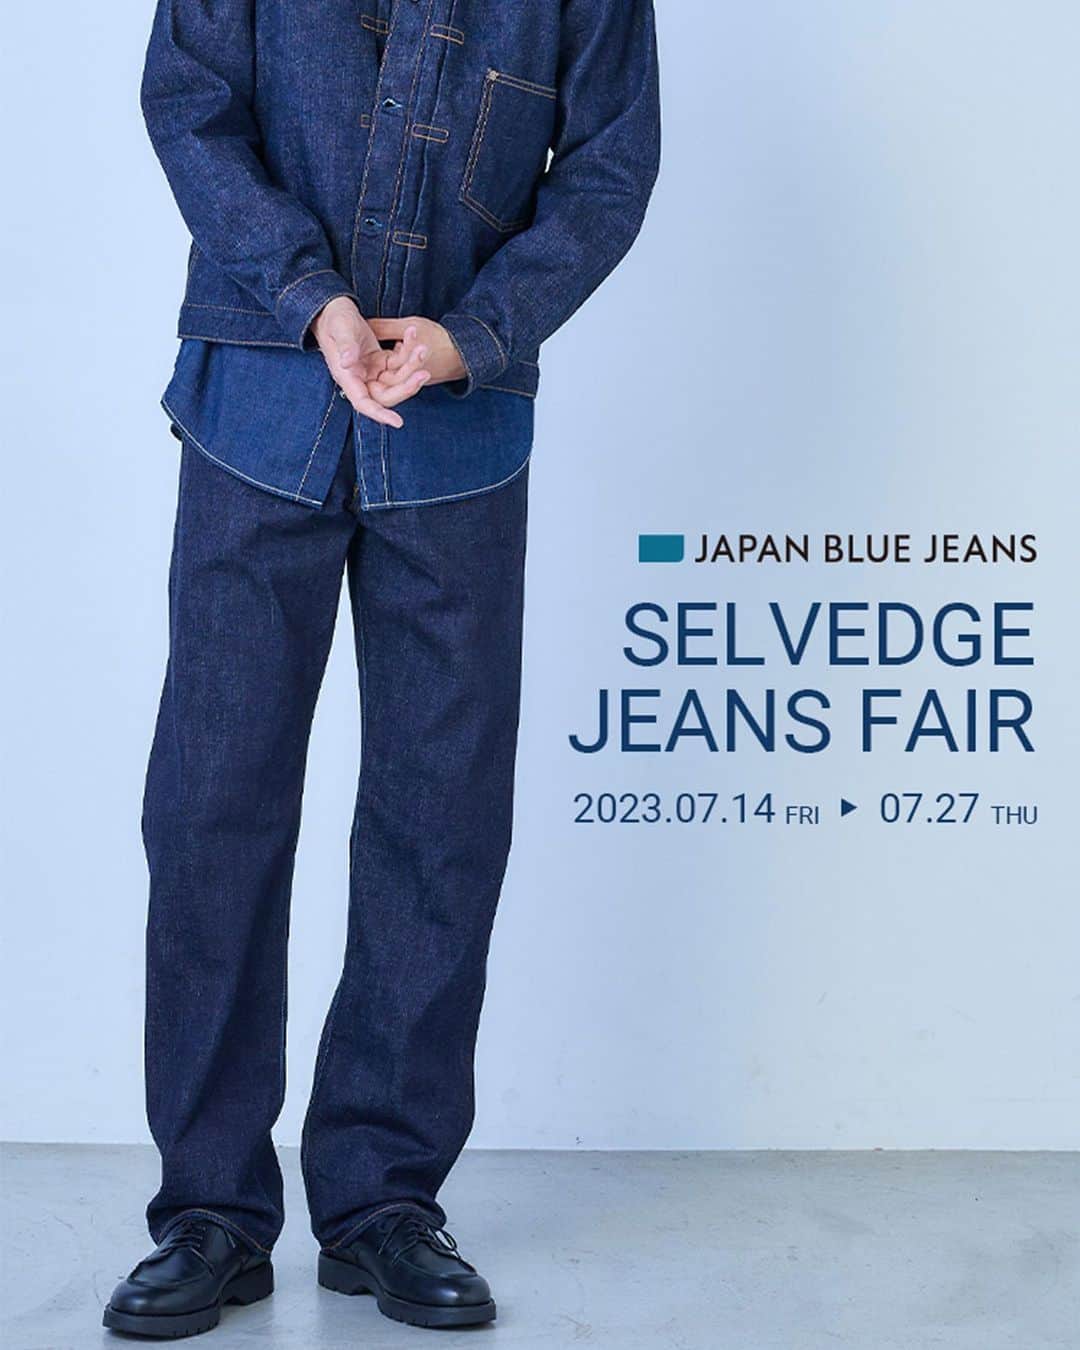 Japanblue Jeansのインスタグラム：「. JAPAN BLUE JEANS  SELVEDGE JEANS FAIR 2023.07.14(Fri) - 07.27(Thu)  JAPAN BLUE JEANSの定番ジーンズから新型シルエットのLOOSE(ルーズ)が新登場！ 2023年7月14日(金)より直営店舗やデニム研究所オンラインショップ、一部正規取扱店にて発売開始いたします。  そこで、新型ルーズ登場を記念しまして、 2023年7月14日(金)より「セルヴィッチジーンズフェア」を開催致します。   全国50店舗以上の正規取扱店では新型ルーズはもちろん、 普段は取り扱いのないモデルを加えたモアバリエーションで展開しております。 JAPAN BLUE JEANSのセルヴィッチジーンズを多数ご用意しております。 試着も可能ですのでこの機会にぜひお近くの店舗へご来店ください。   また、JAPAN BLUE JEANS直営店舗では、高級綿のスビンゴールド綿を使用した直営限定ジーンズの同時発売が決定！ 最高級綿と言われる品種のスビンゴールド綿で作られるジーンズは、光沢があり艶のある表情に仕上がります。 肌触りがなめらかで、デニム特有のゴワゴワ感が少なく柔らかな穿き心地。 高級綿のスビン綿を100％使用した特別なジーンズをぜひ店頭でお確かめください。    JAPAN BLUE JEANS  SELVEDGE JEANS FAIR  ＜開催期間＞ 2023年7月14日(金)～7月27日(木)  ＜直営店舗一覧＞ JAPAN BLUE JEANS 児島店 JAPAN BLUE JEANS 渋谷店 JAPAN BLUE JEANS 上野店 JAPAN BLUE JEANS 京都店（特約店） JAPAN BLUE JEANS浅草店（特約店） デニム研究所 by JAPAN BLUE　倉敷店 デニム研究所 by JAPAN BLUE オンラインショップ  ＜開催正規取扱店 一覧＞ バータータウン札幌 Peg by LEFTY CLOTHING ジーンズショップNAITO Willy Willy ジーンズショップ パレット店　第１フロア Willy Willy パイルアップ店 フラミンゴ DESIGN+苫小牧店 bene posto イオンモール盛岡店 bene posto 泉パークタウン タピオ店 bene posto 新利府南館店 bene postoイオンモール秋田店 Cause イオンモール天童店 Cause 五所川原エルム店 Cause イオンモール盛岡南店 T-BIRD LARGE Frog-Amulet UNION 大宮本店 UNION モラージュ菖蒲店 UNION ピオニウォーク東松山店 UNION 宇都宮インターパーク店 UNION イオンモール東久留米店 UNION イオンモール川口前川店 UNION テラスモール松戸店 UNION イオンモール太田店 Rocking Chair 610 アメリカ屋 GENERAL GARDEN EARTH MARKET Bear’s SLOW JAM K2APARTMENT ジーンズショップOSADA 東静岡店 ジーンズショップOSADA 藤枝ついじ店 URBENE OT&E-shibata MAKI+IZE 常滑店 WORKS. 堺店 WORKS. 和泉店 JEANS STATION 姫路店 united oak 久米店 united oak 美沢店 mieux BAYBROOK OUTLET The Bliss (パビリヨンブリス) PREMIUM DENIM STORE PIN-UP都城イオンモール店 ジーンズショップ マエムラ本店  #japanblue  #japanbluejeans #selvedge #jeans #fair  #loose #classic #straight #tapered #okayama #kojima   #ジャパンブルー  #ジャパンブルージーンズ #セルヴィッチ #ジーンズ #フェア #ルーズ #クラシック #ストレート #テーパード #岡山 #児島」